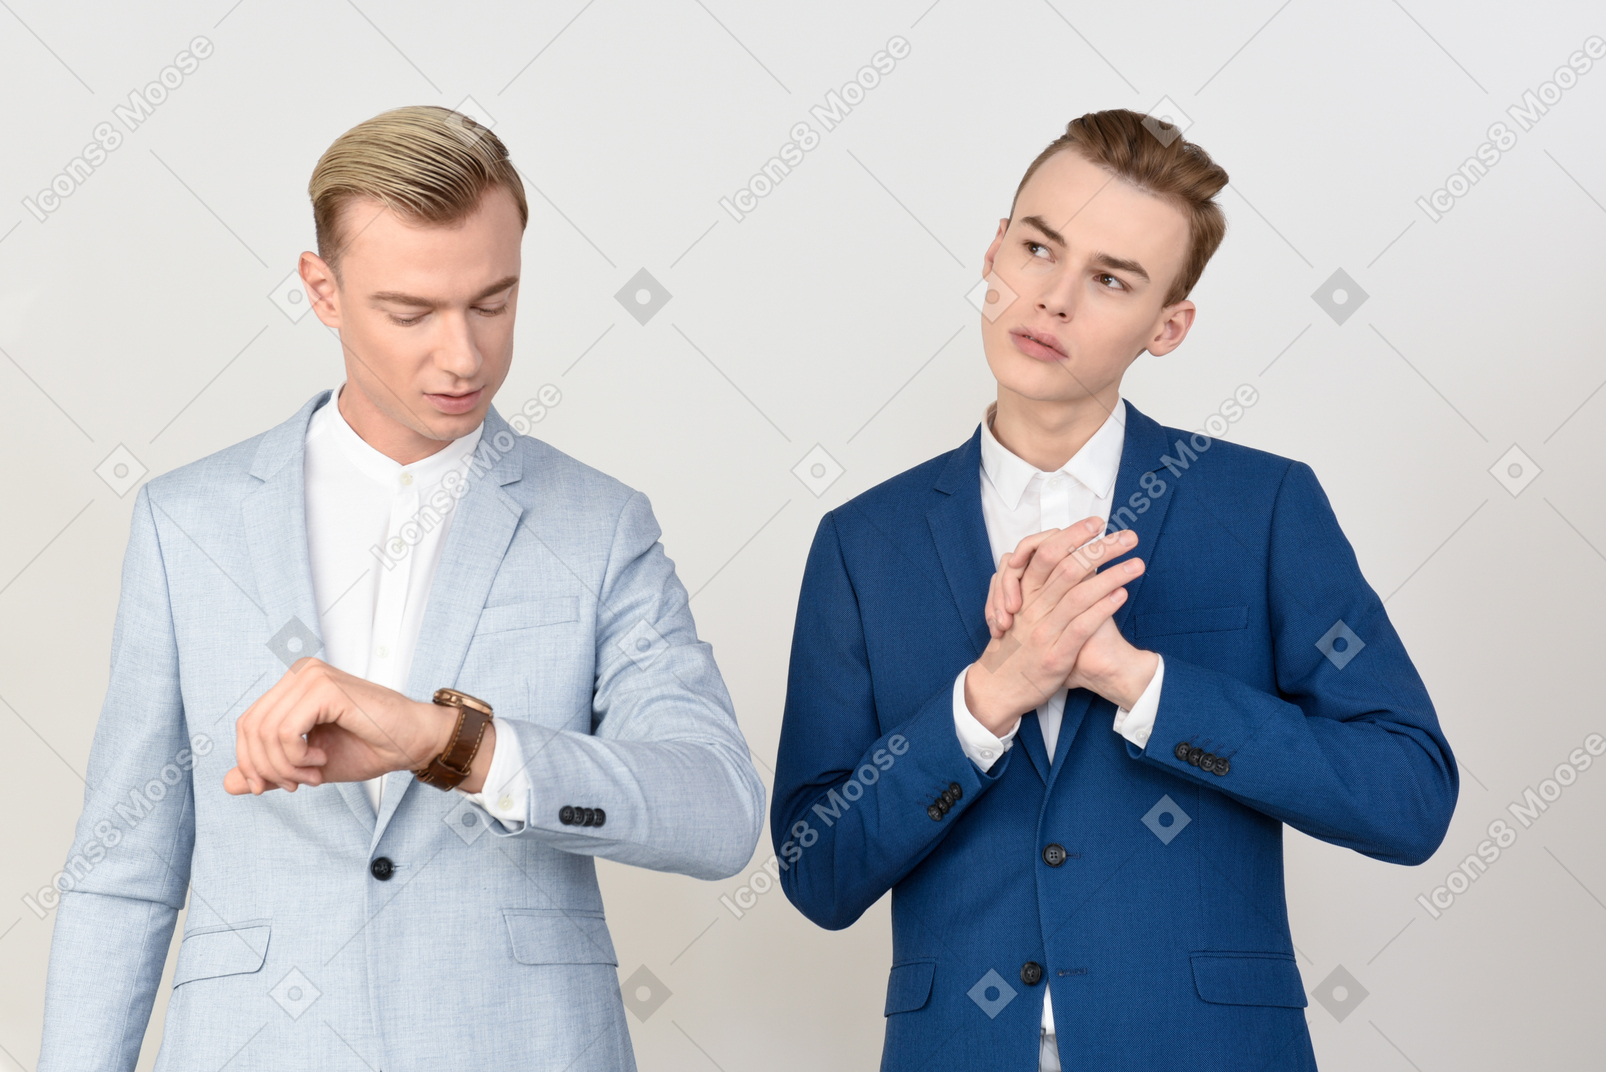 시계를보고있는 남자와 그의 남성 동료가 잠겨있는 모습